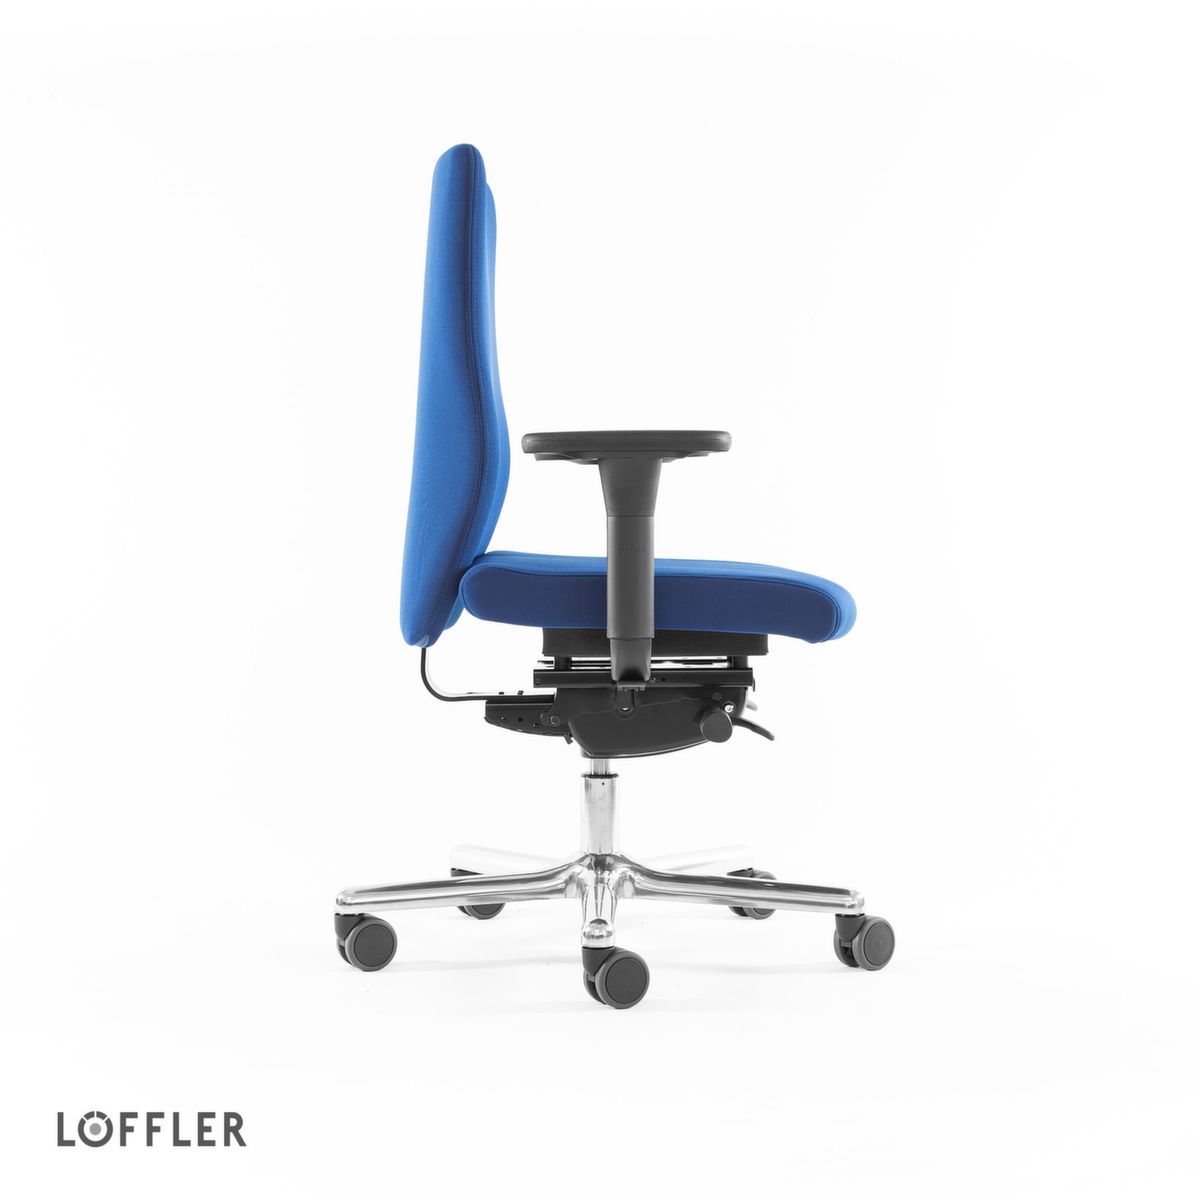 Löffler Siège de bureau pivotant avec assise à noyau de ressorts ensachés, bleu  ZOOM